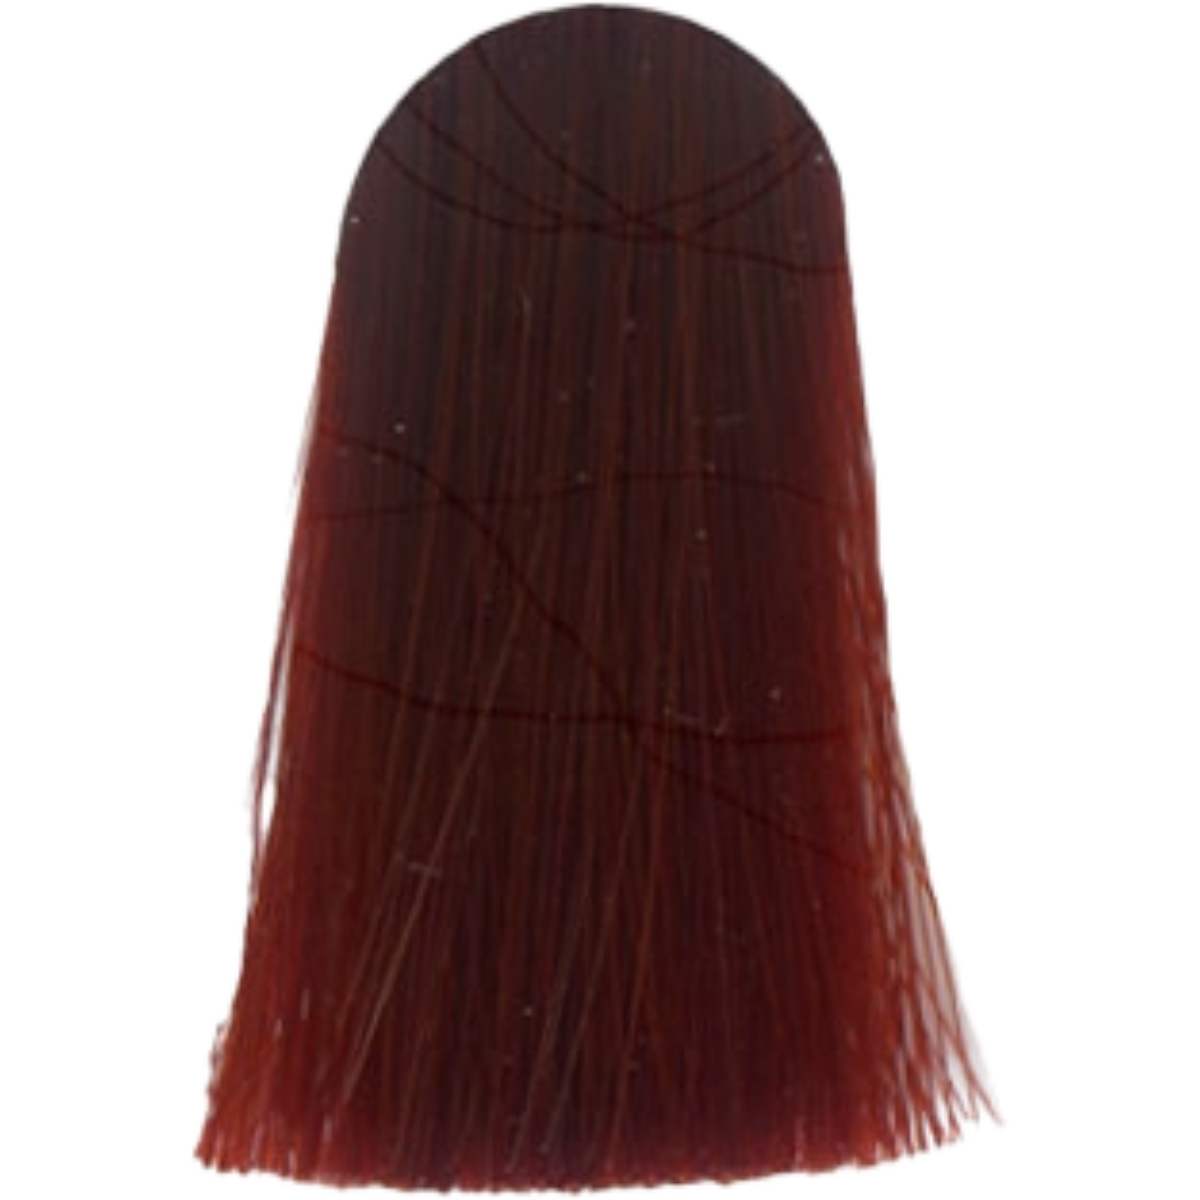 צבע לשיער 8.66X גוון LIGHT BLONDE EXTRA RED אינדולה INDOLA צבע לשיער 60 גרם